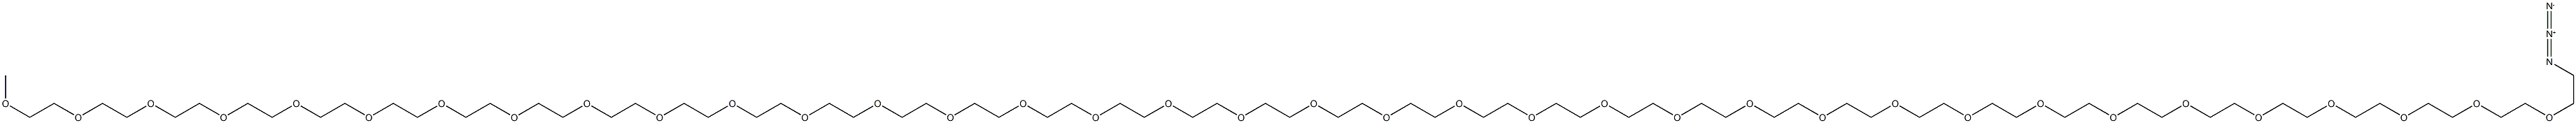 Methoxypolyethylene  glycol  azide